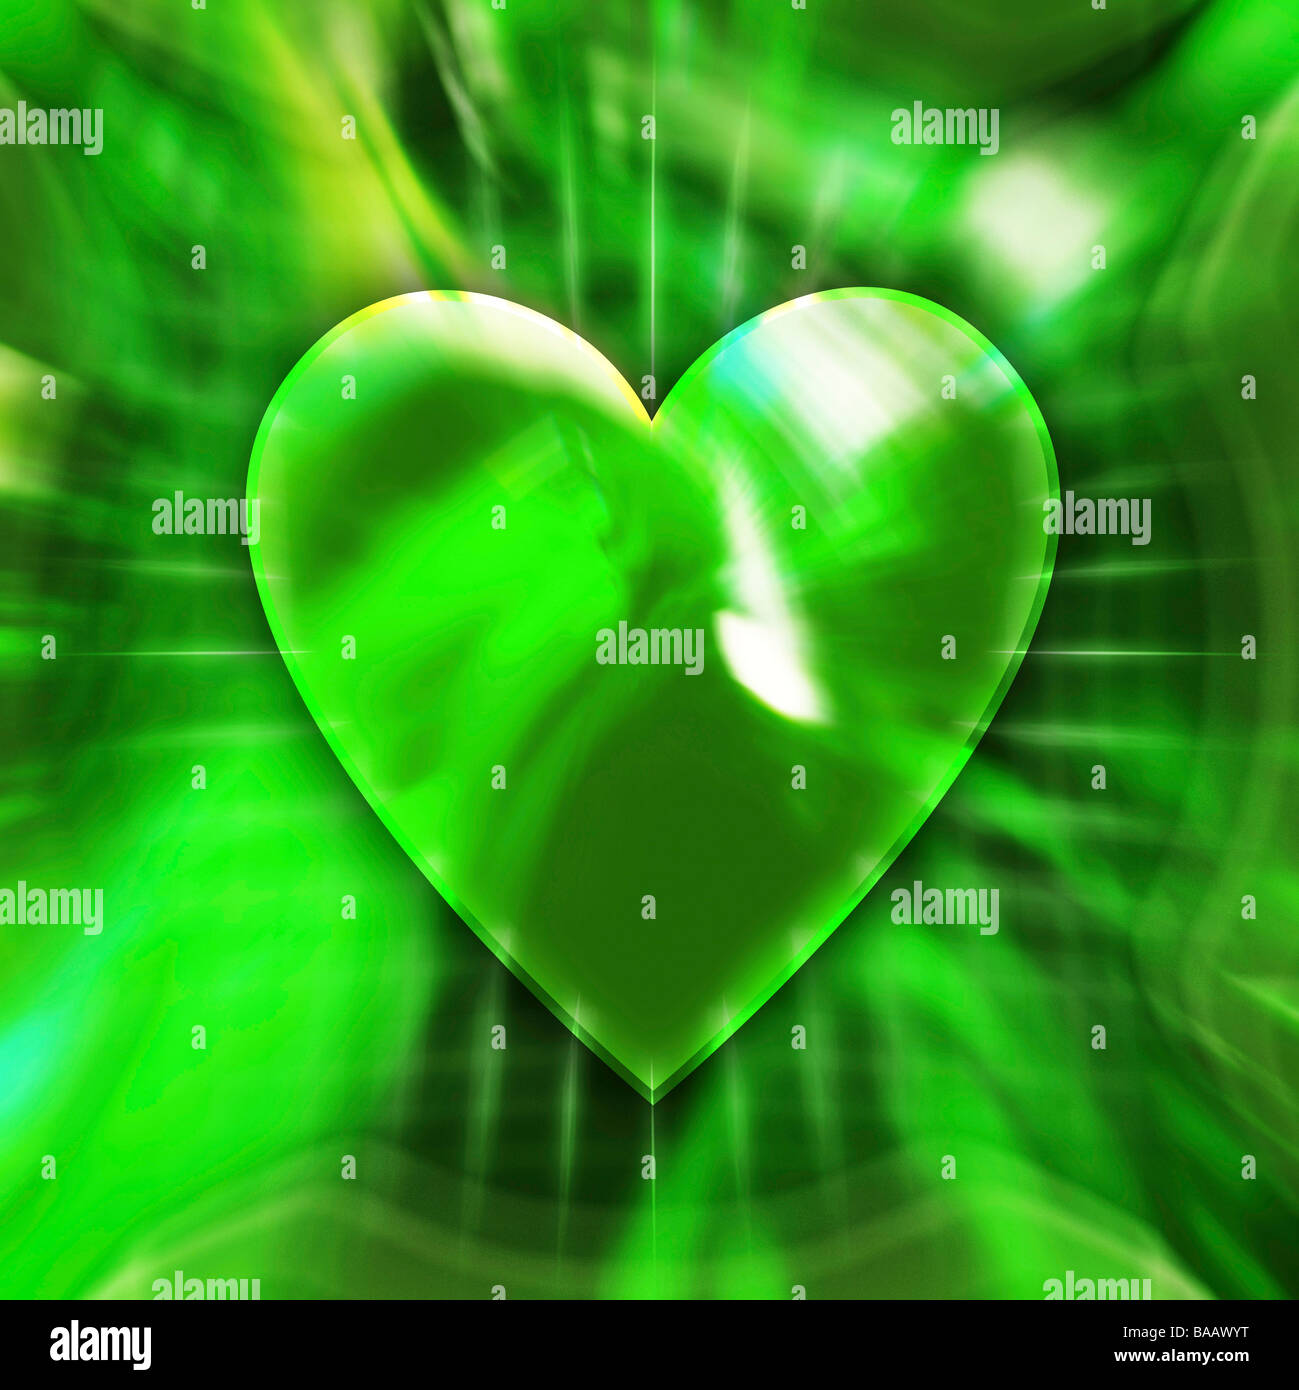 Green heart symbol Stock Photo